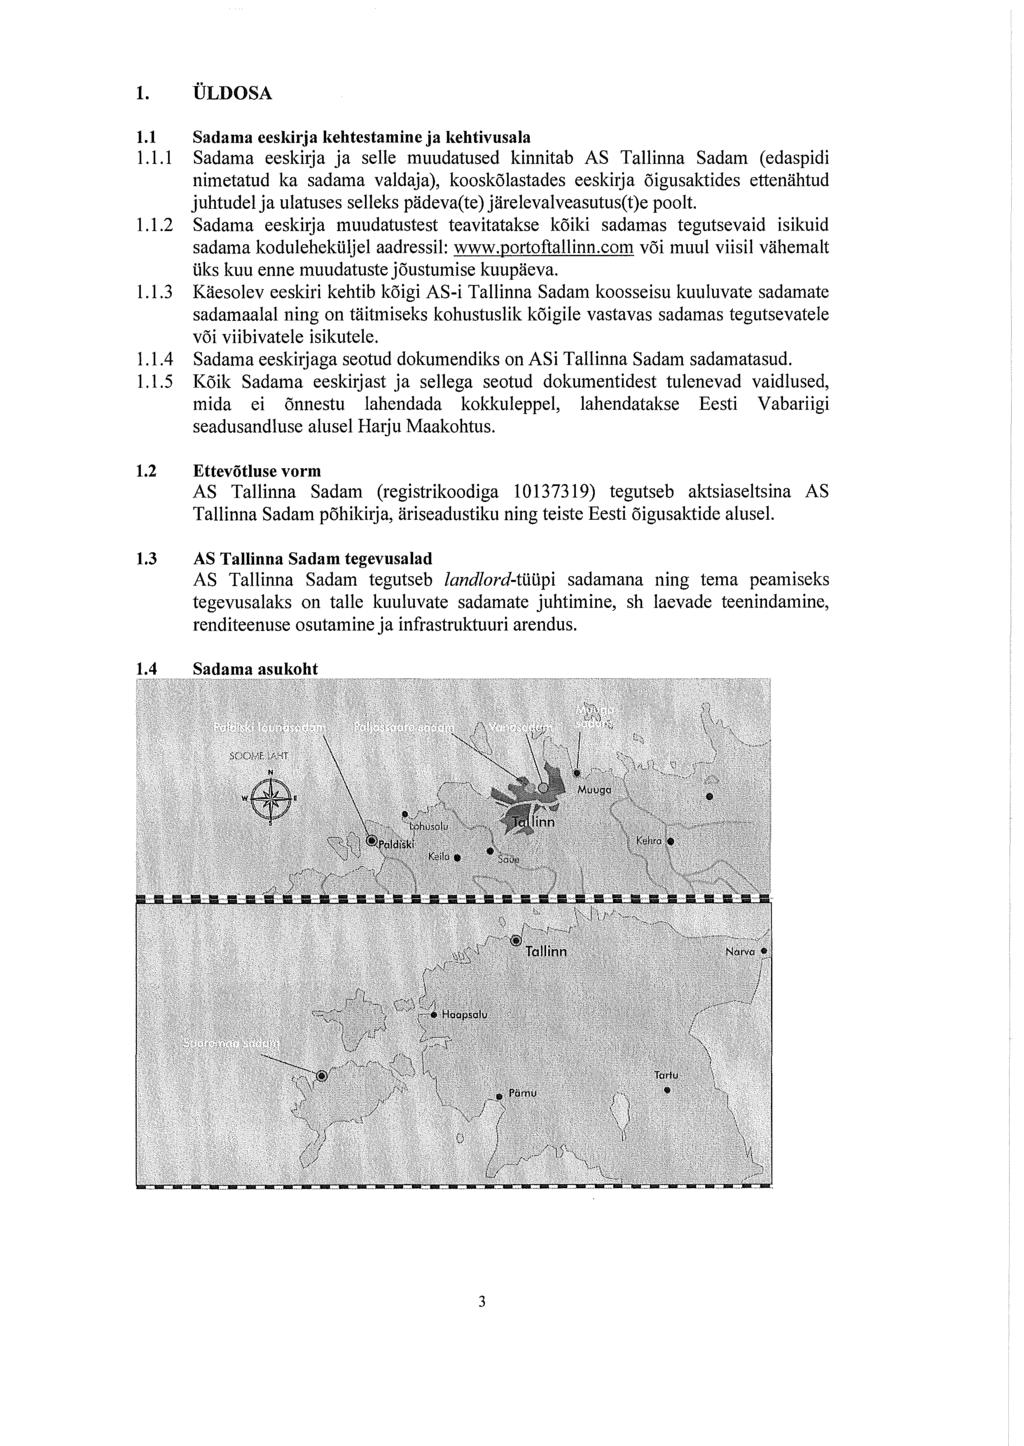 1. ÜLDOSA 1.1 Sadama eeskirja kehtestamine ja kehtivusala 1.1.1 Sadama eeskirja ja selle muudatused kinnitab AS Tallinna Sadam (edaspidi nimetatud ka sadama valdaja), kooskõlastades eeskirja